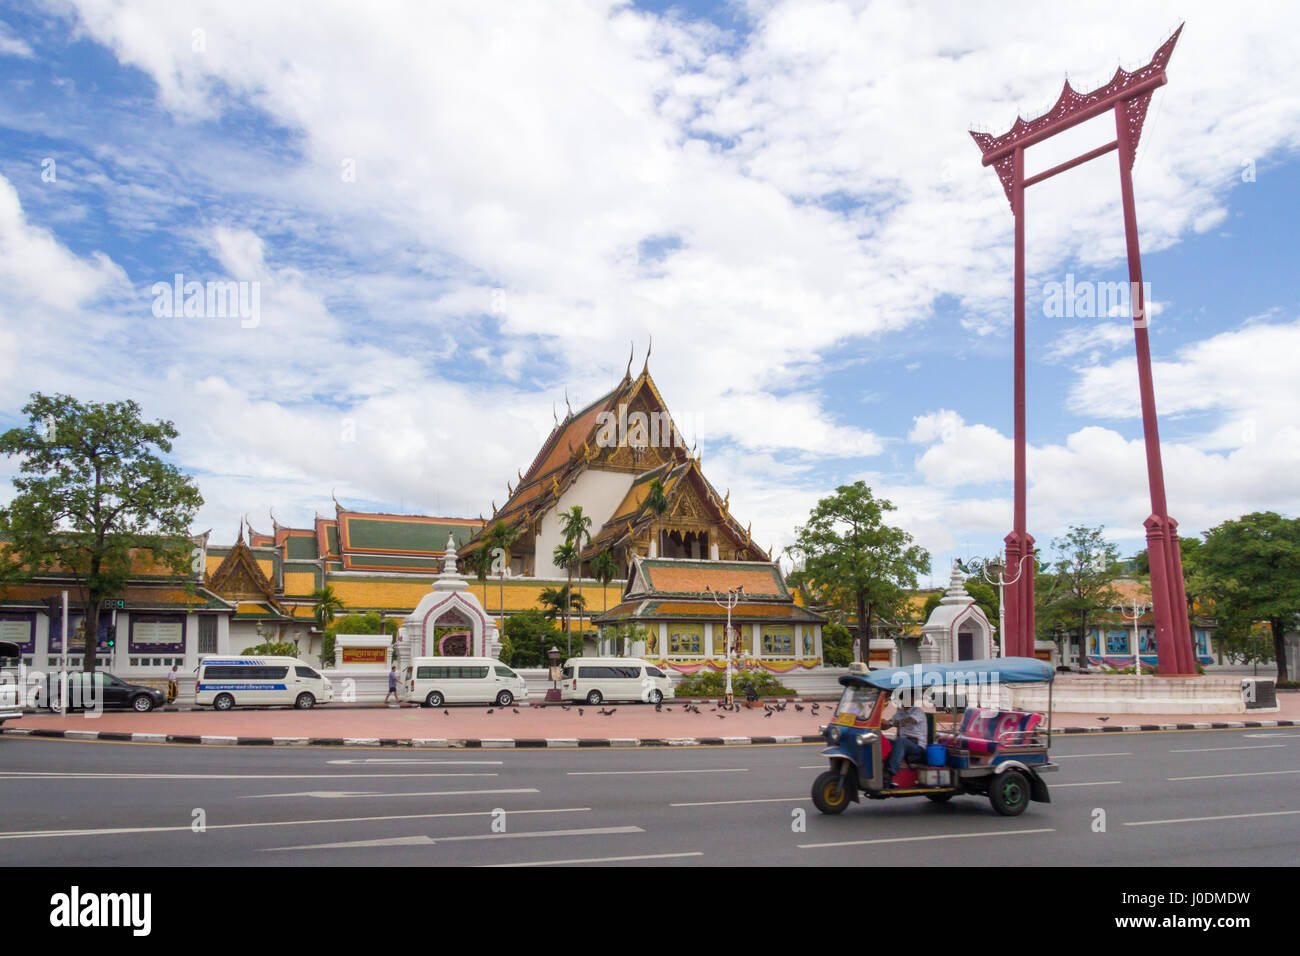 Atuk tuk rigidi passato il gigante Swing con il Wat Suthat in background, Bangkok, Thailandia Foto Stock